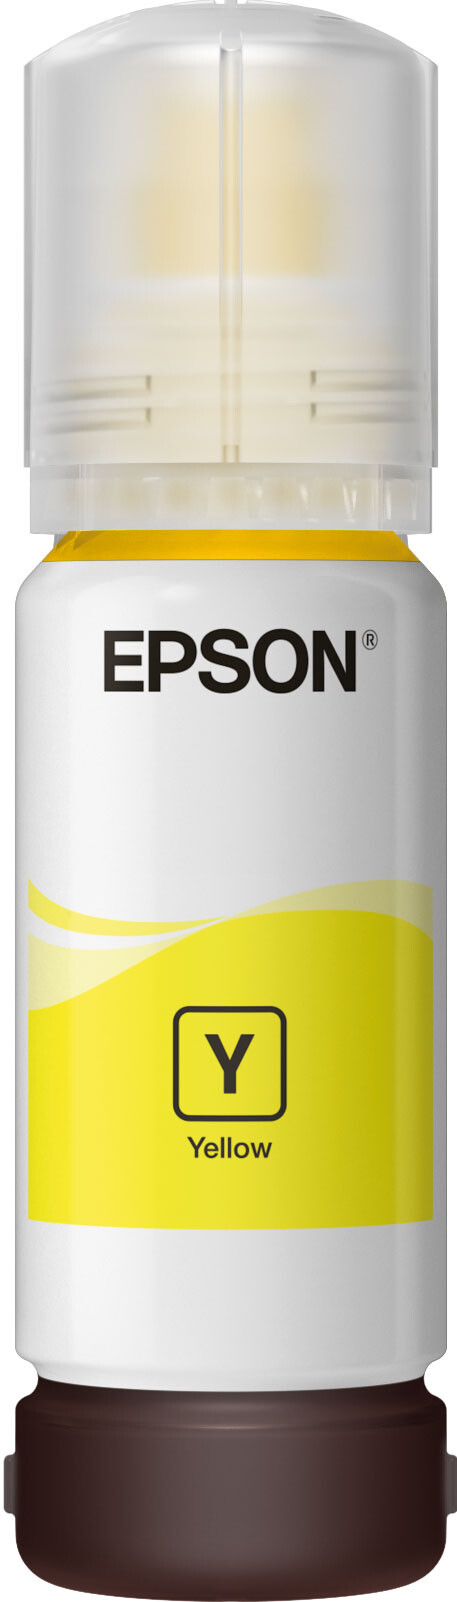 Epson-102-EcoTank-Pigment-Tintenflasche-Gelb